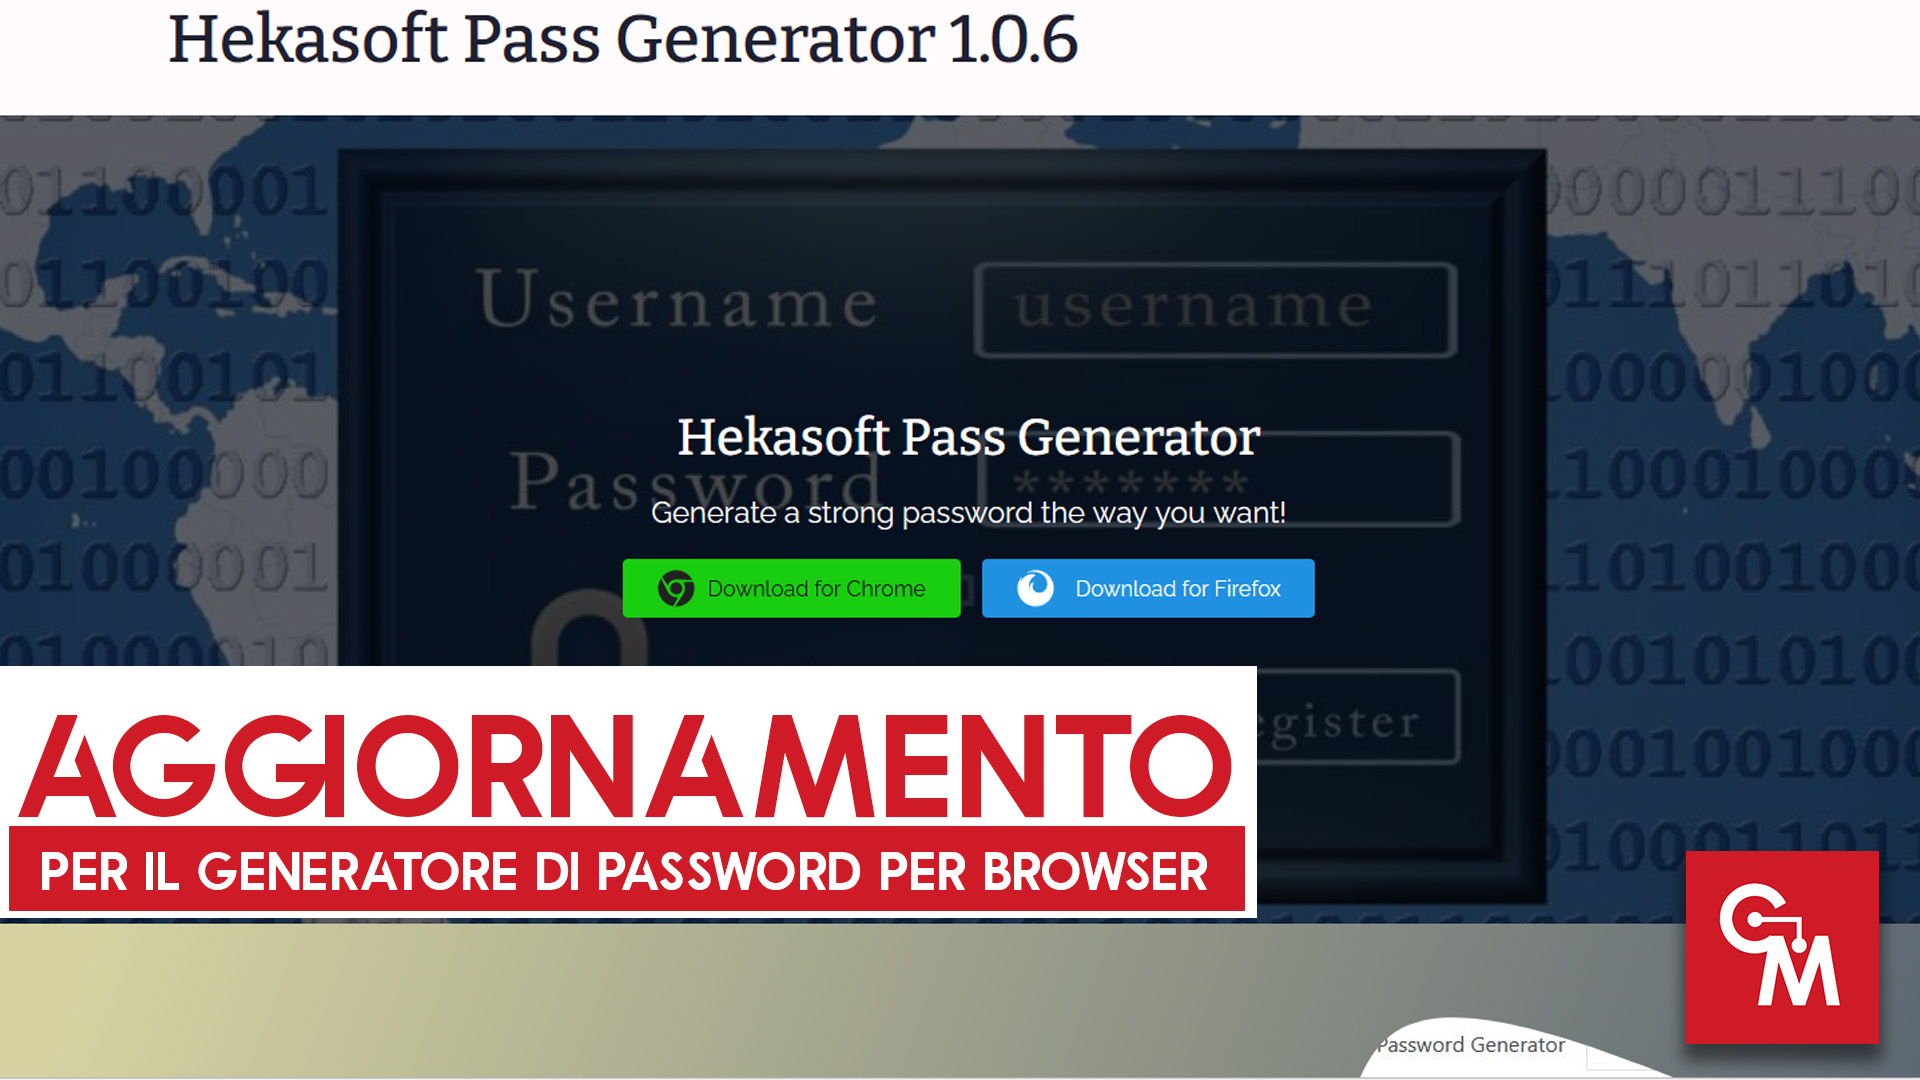 Aggiornamento per il generatore di Password per browser